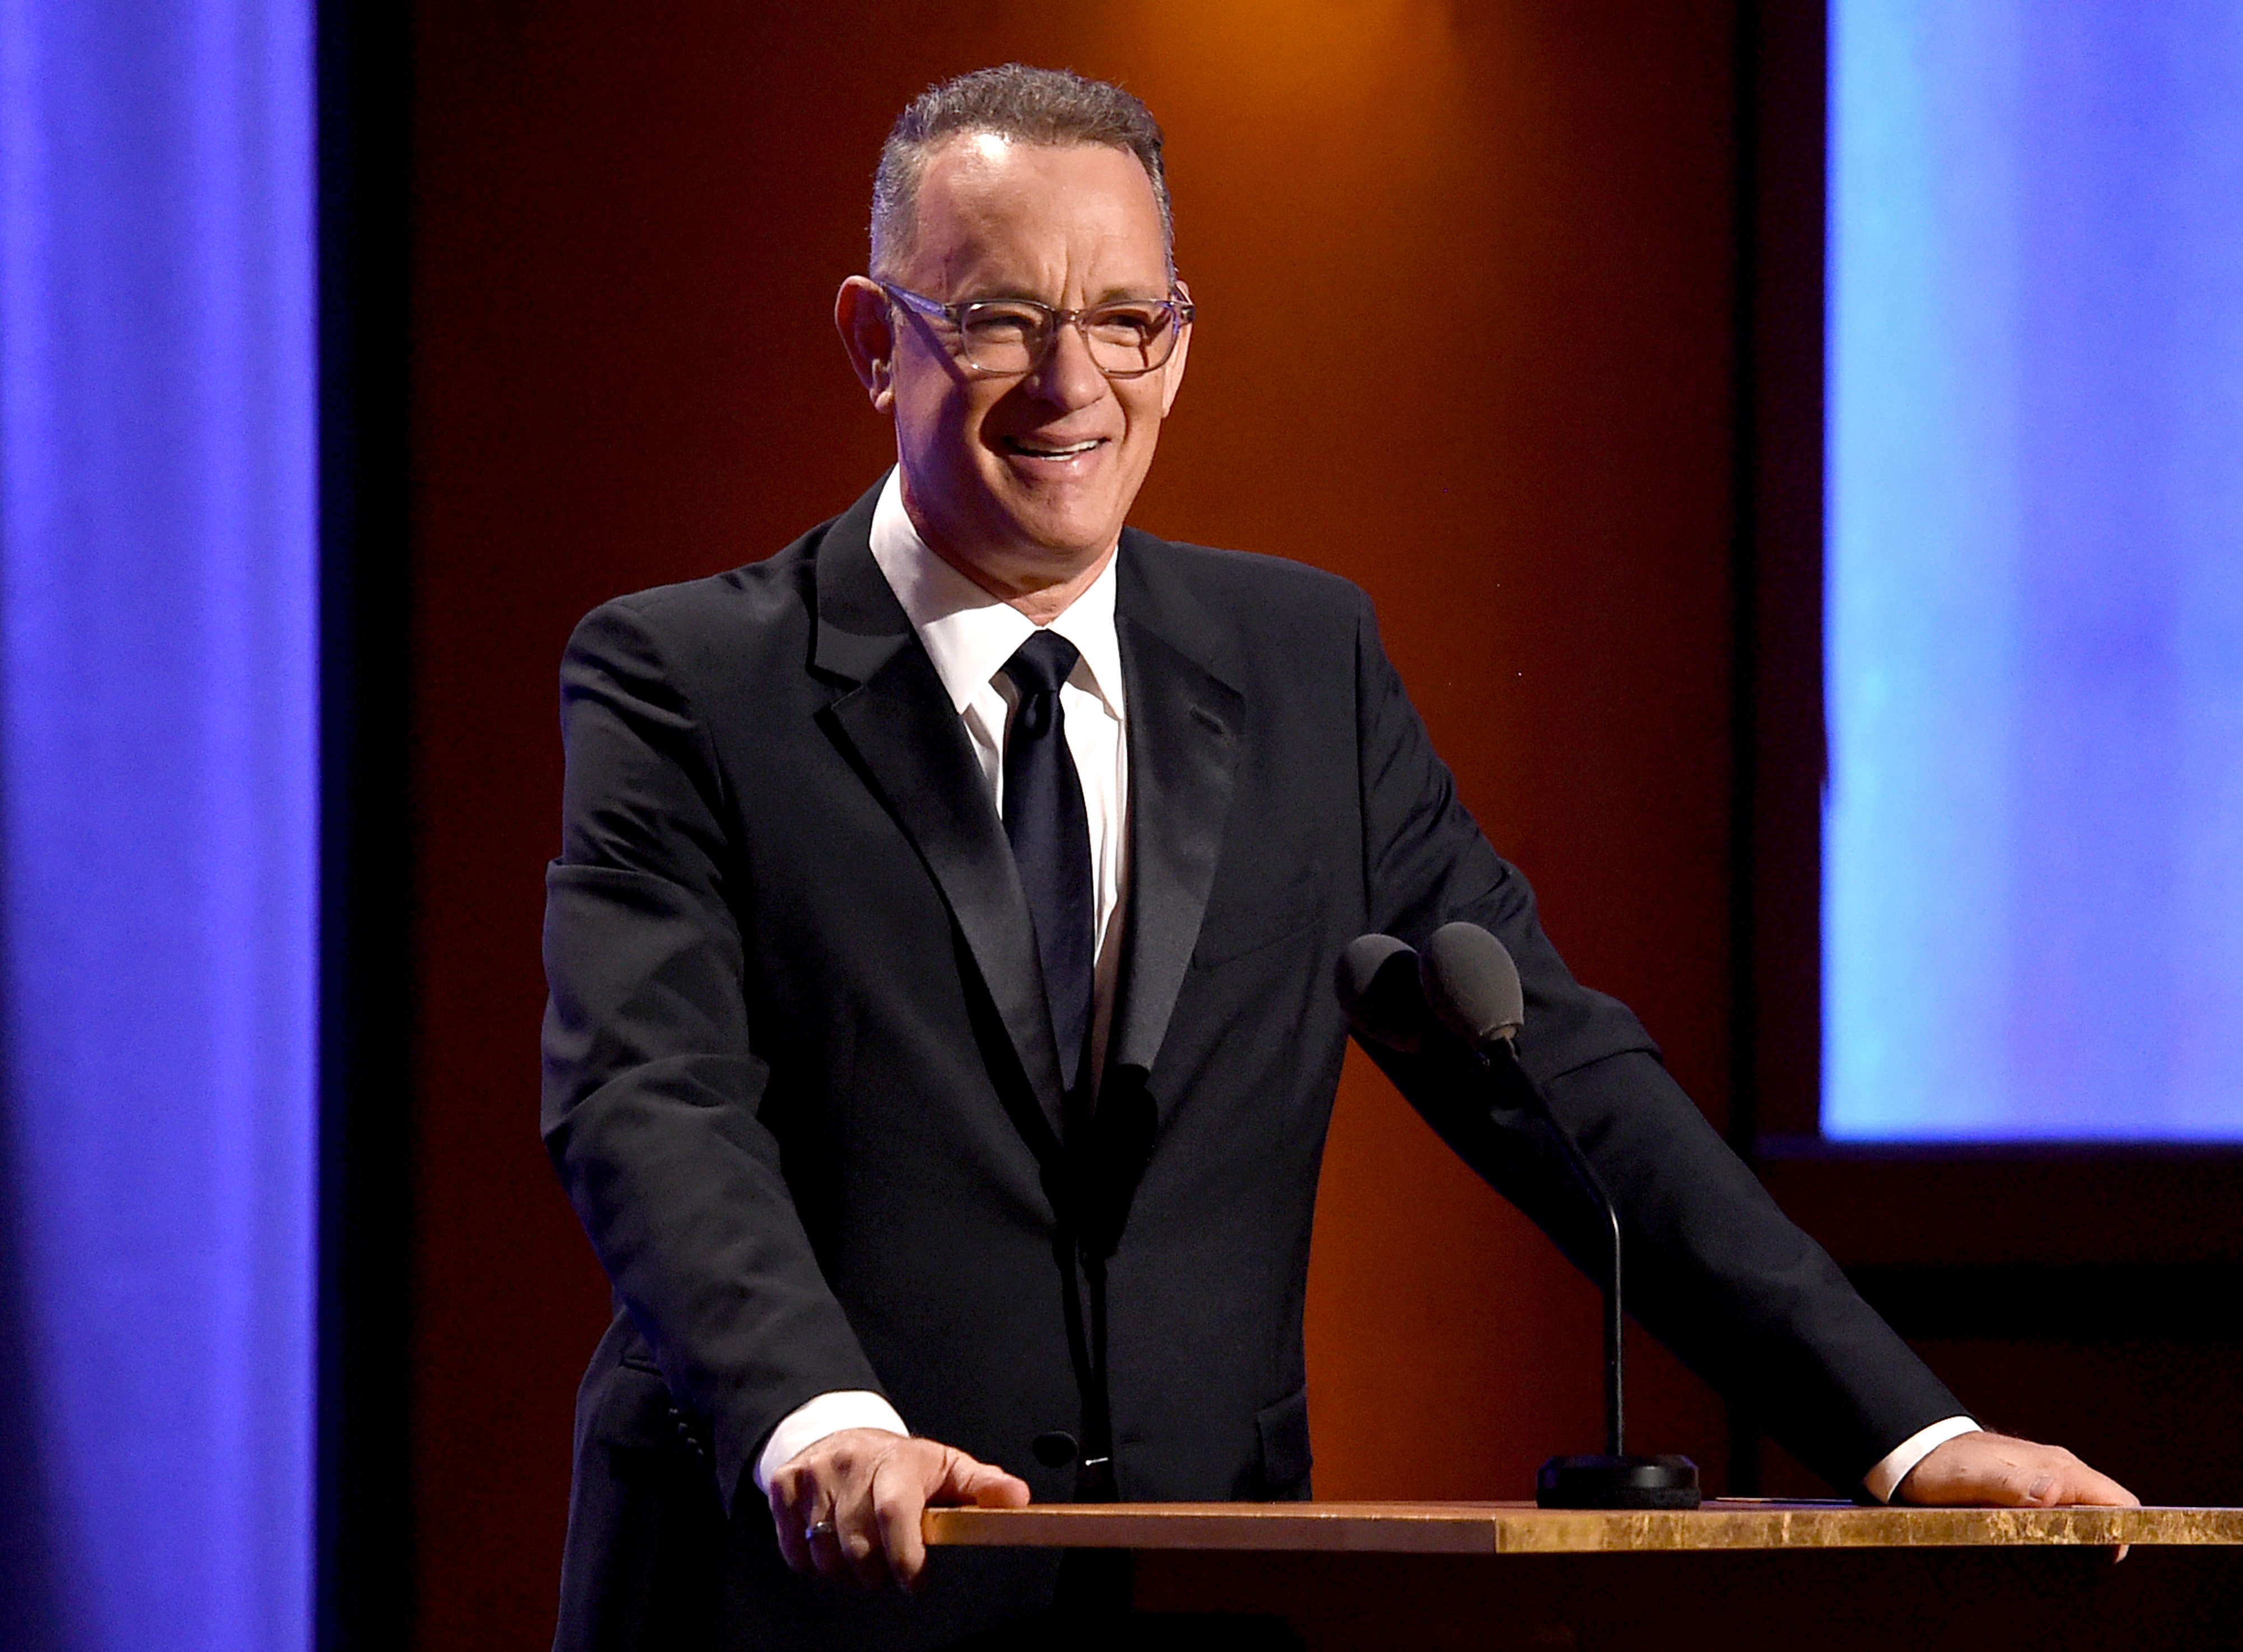 Tom Hanks spricht auf der Bühne während der 10. jährlichen Governors Awards der Academy of Motion Picture Arts and Sciences im Ray Dolby Ballroom im Hollywood & Highland Center am 18. November 2018 in Hollywood, Kalifornien. | Quelle: Getty Images